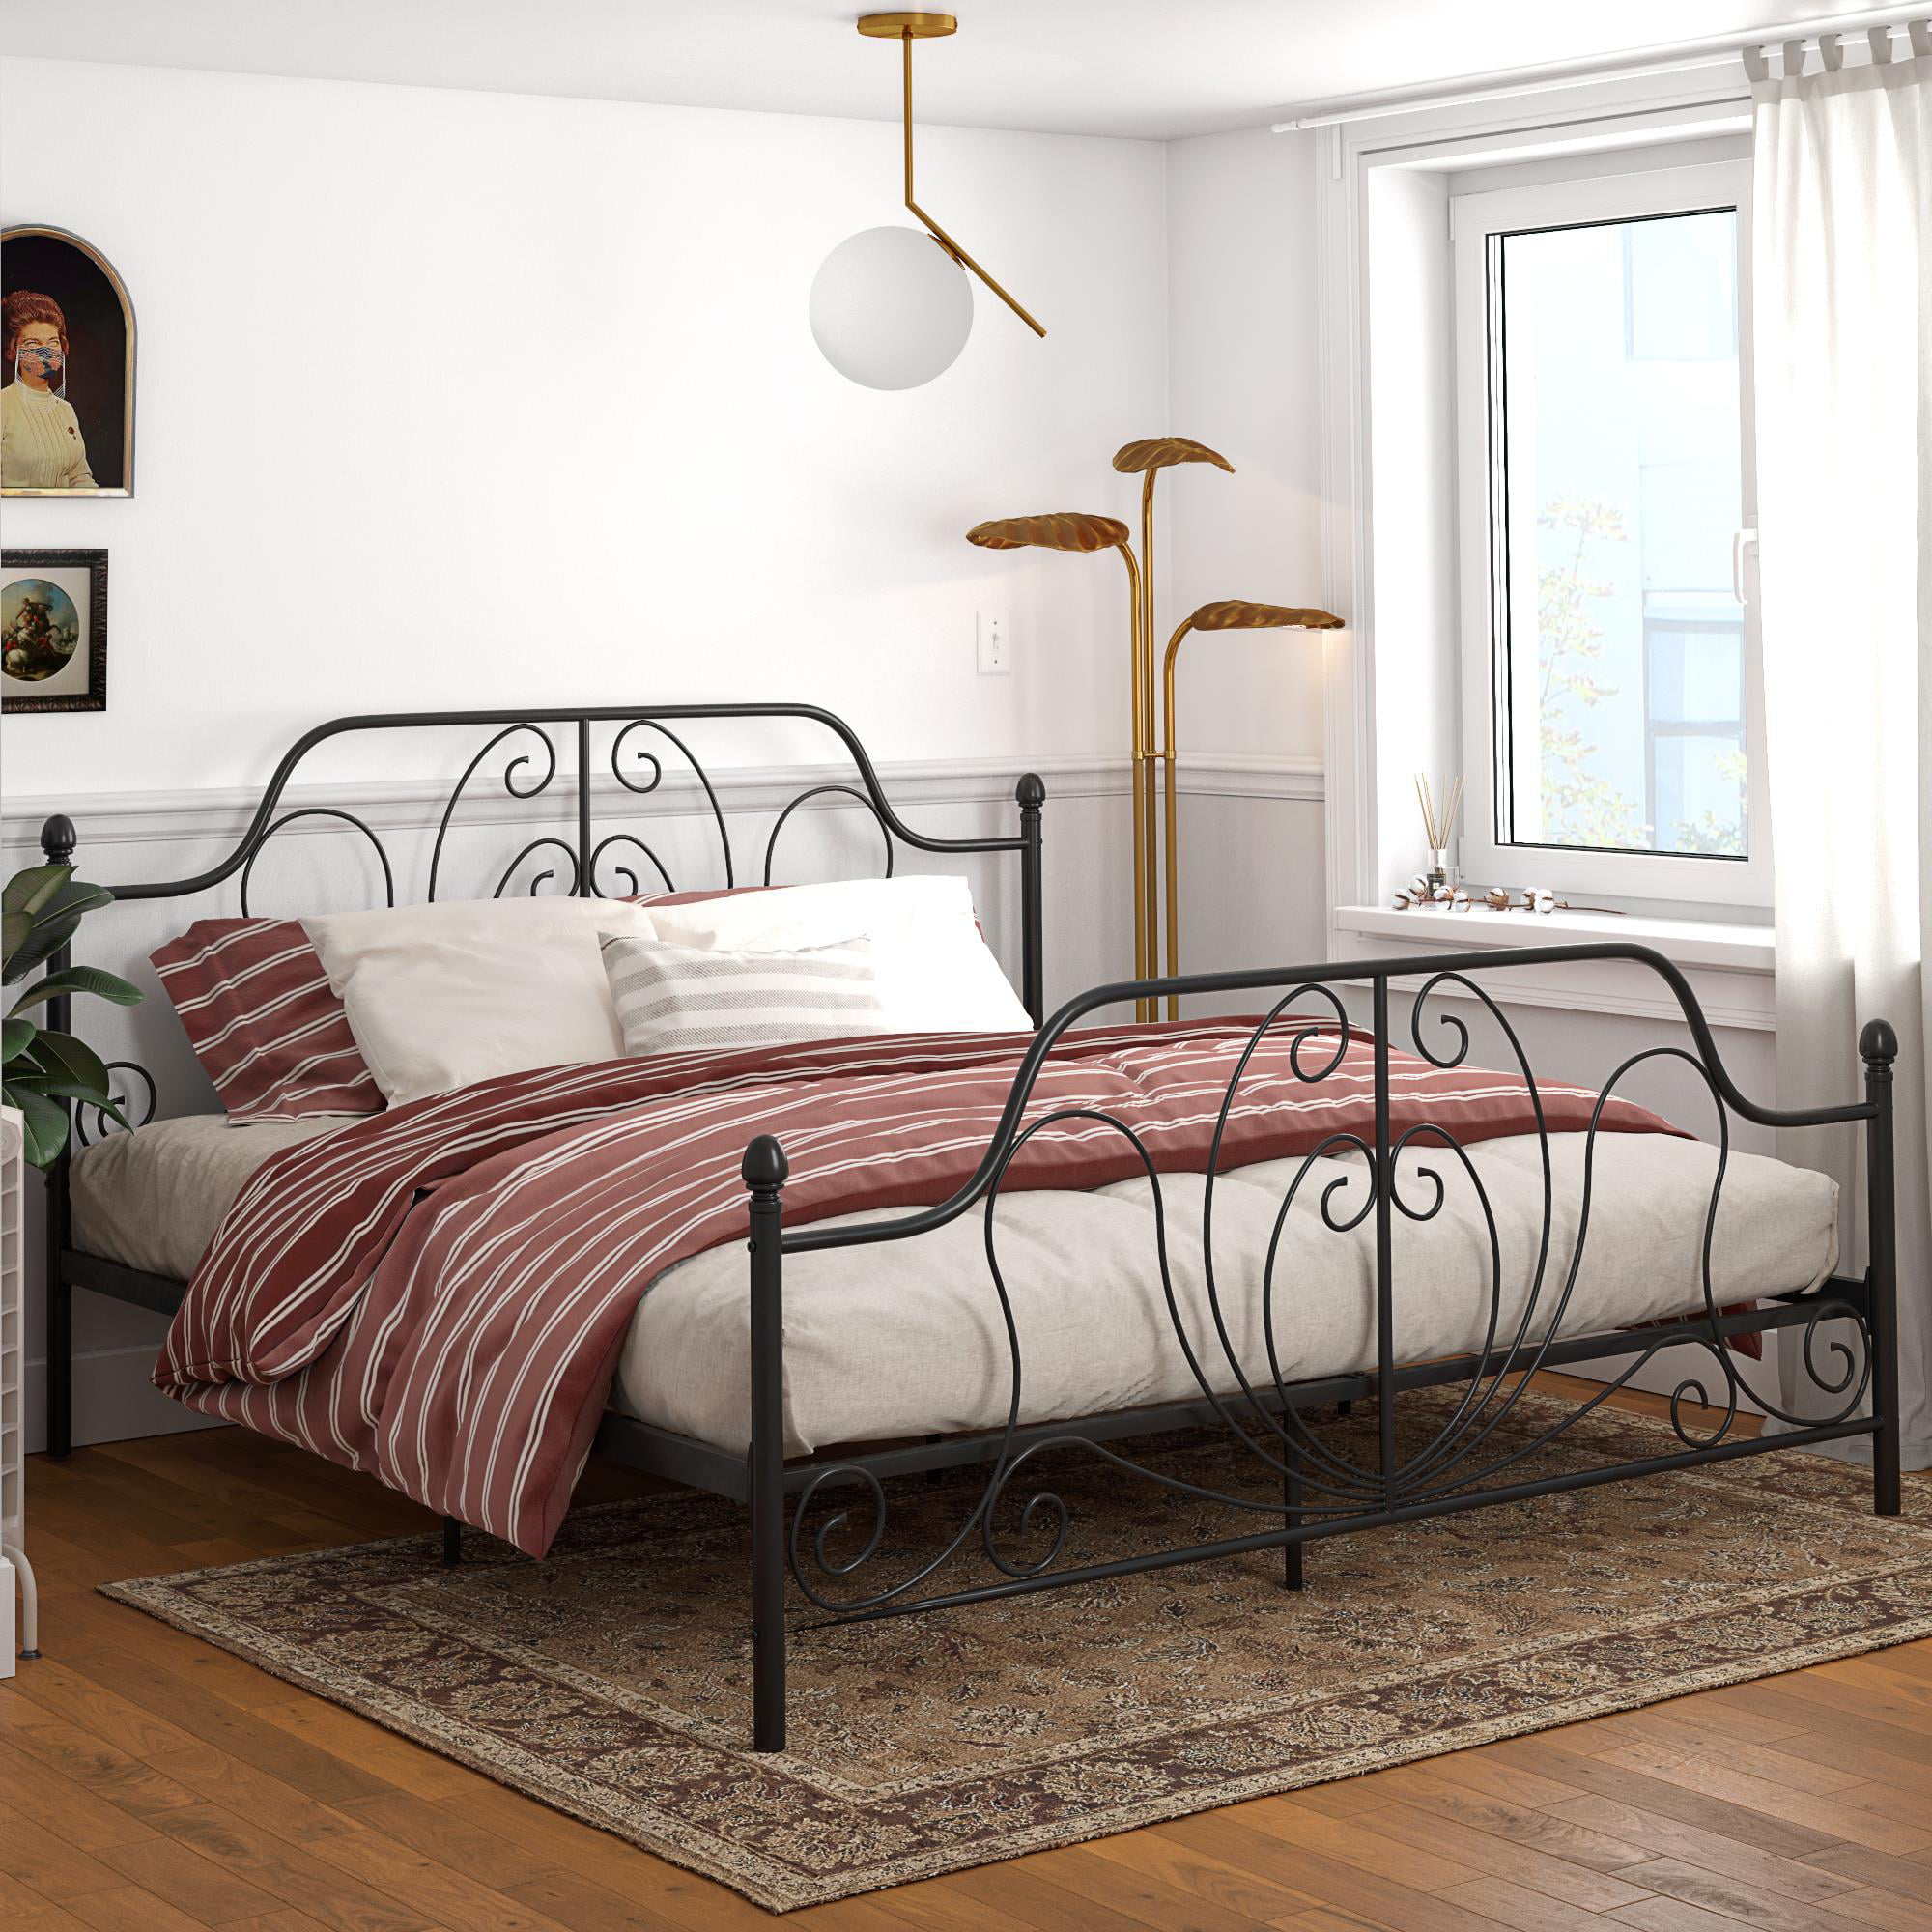 DHP Ivorie Metal Bed, King Size Frame, Adjustable Base Height, Black